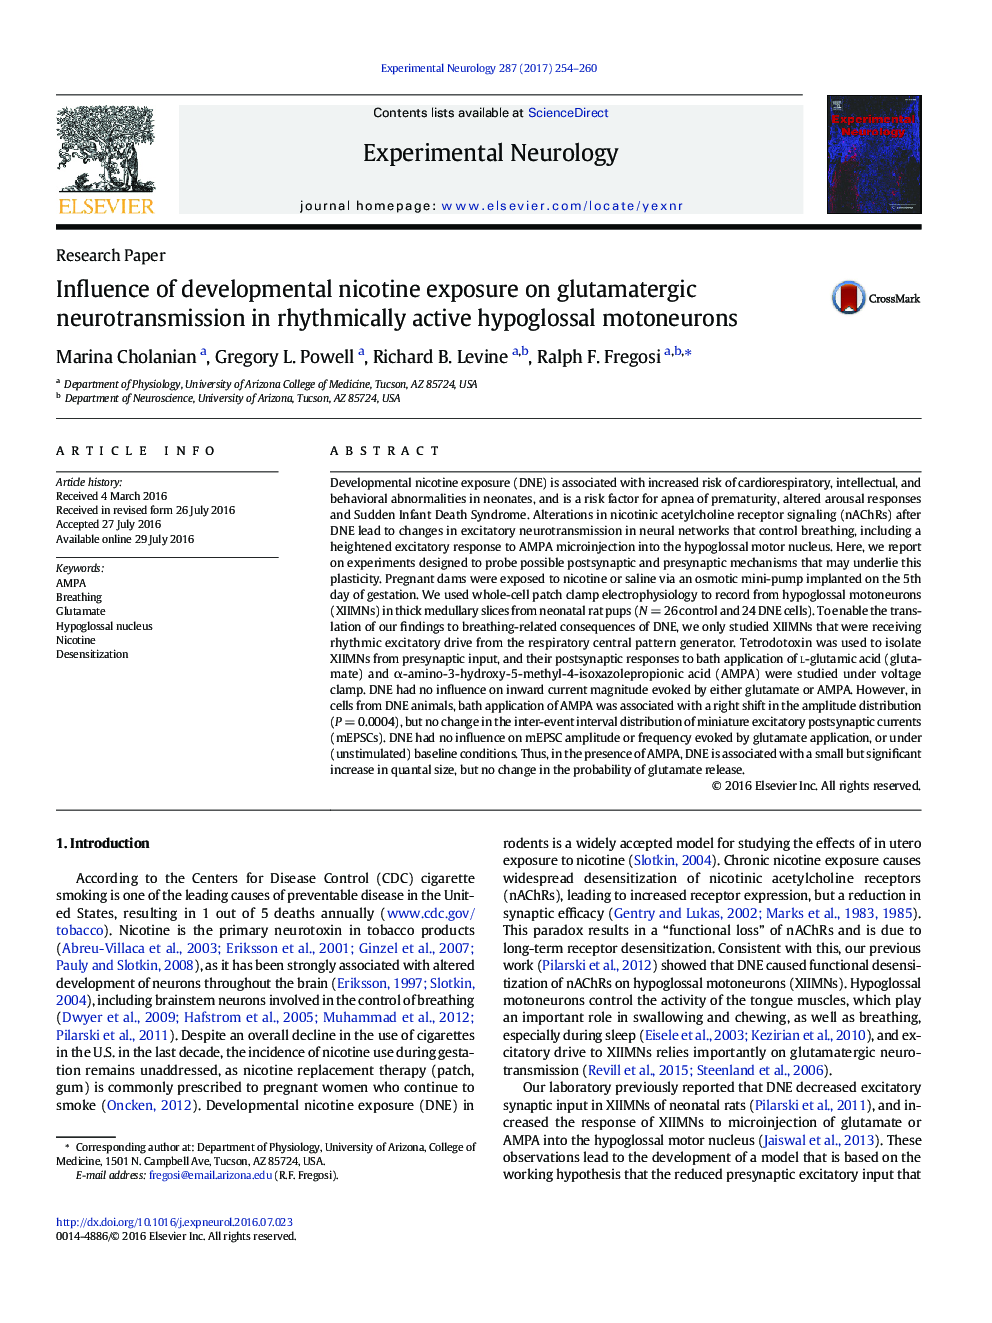 مقاله پژوهشی بررسی تأثیر نیکوتین بالغ بر انتقال نوروتراپی گلوتاماترگیک در موتونیورون های هیپوگلیسمی فعال ریتمیک 